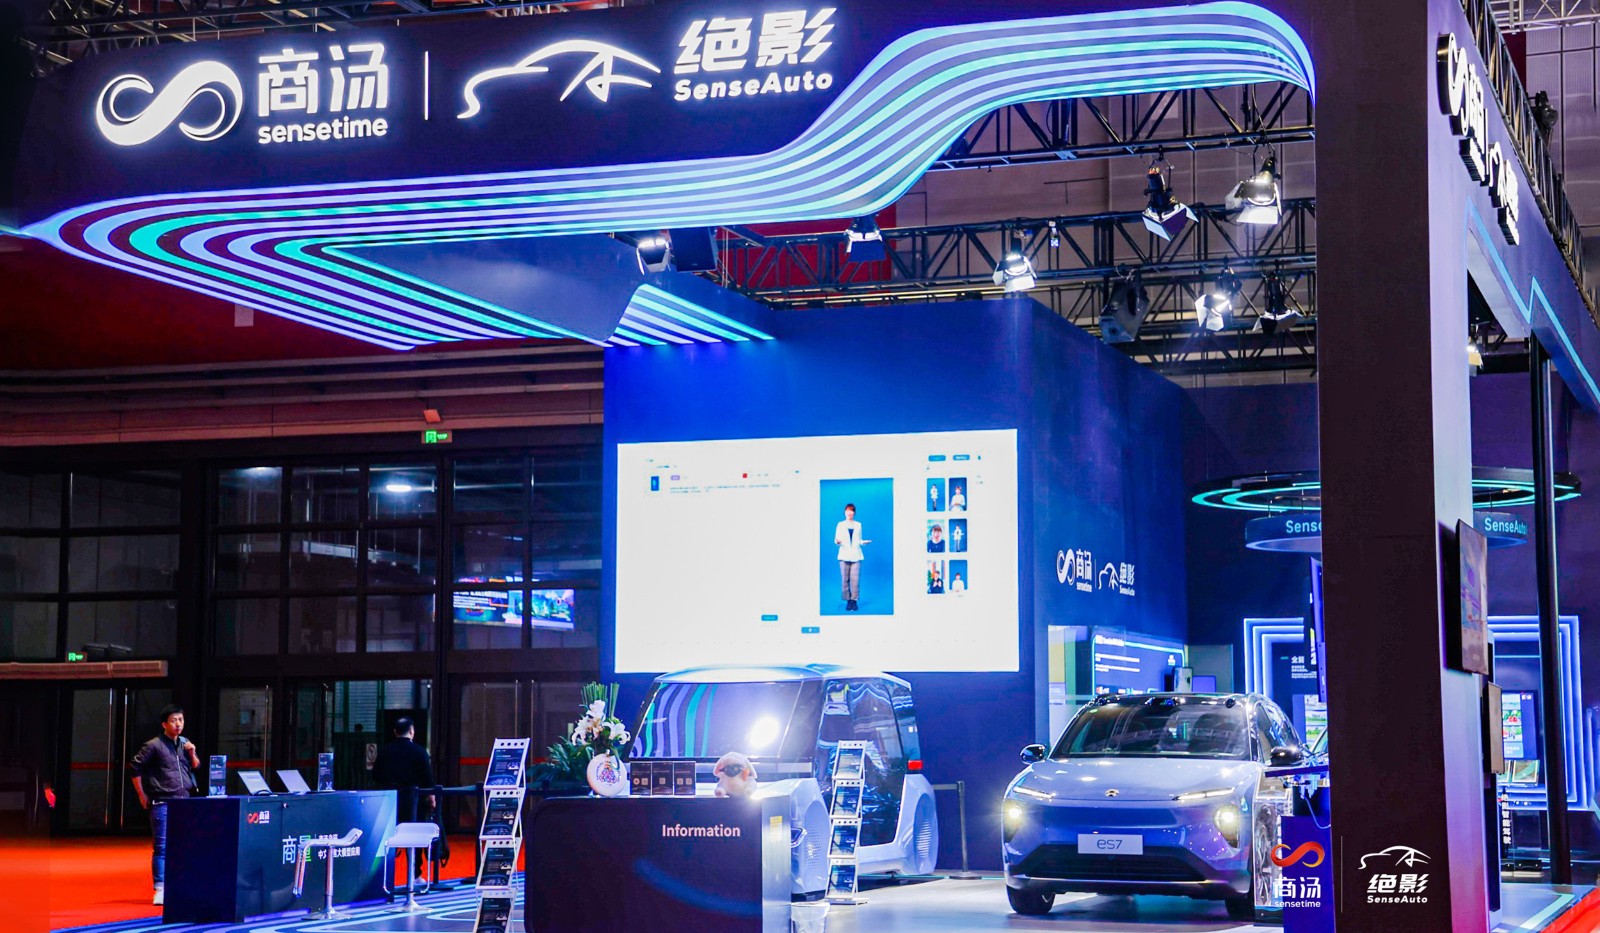 商湯絕影攜「駕、艙、雲」三位一體的產品體系第三次亮相上海車展.jpg